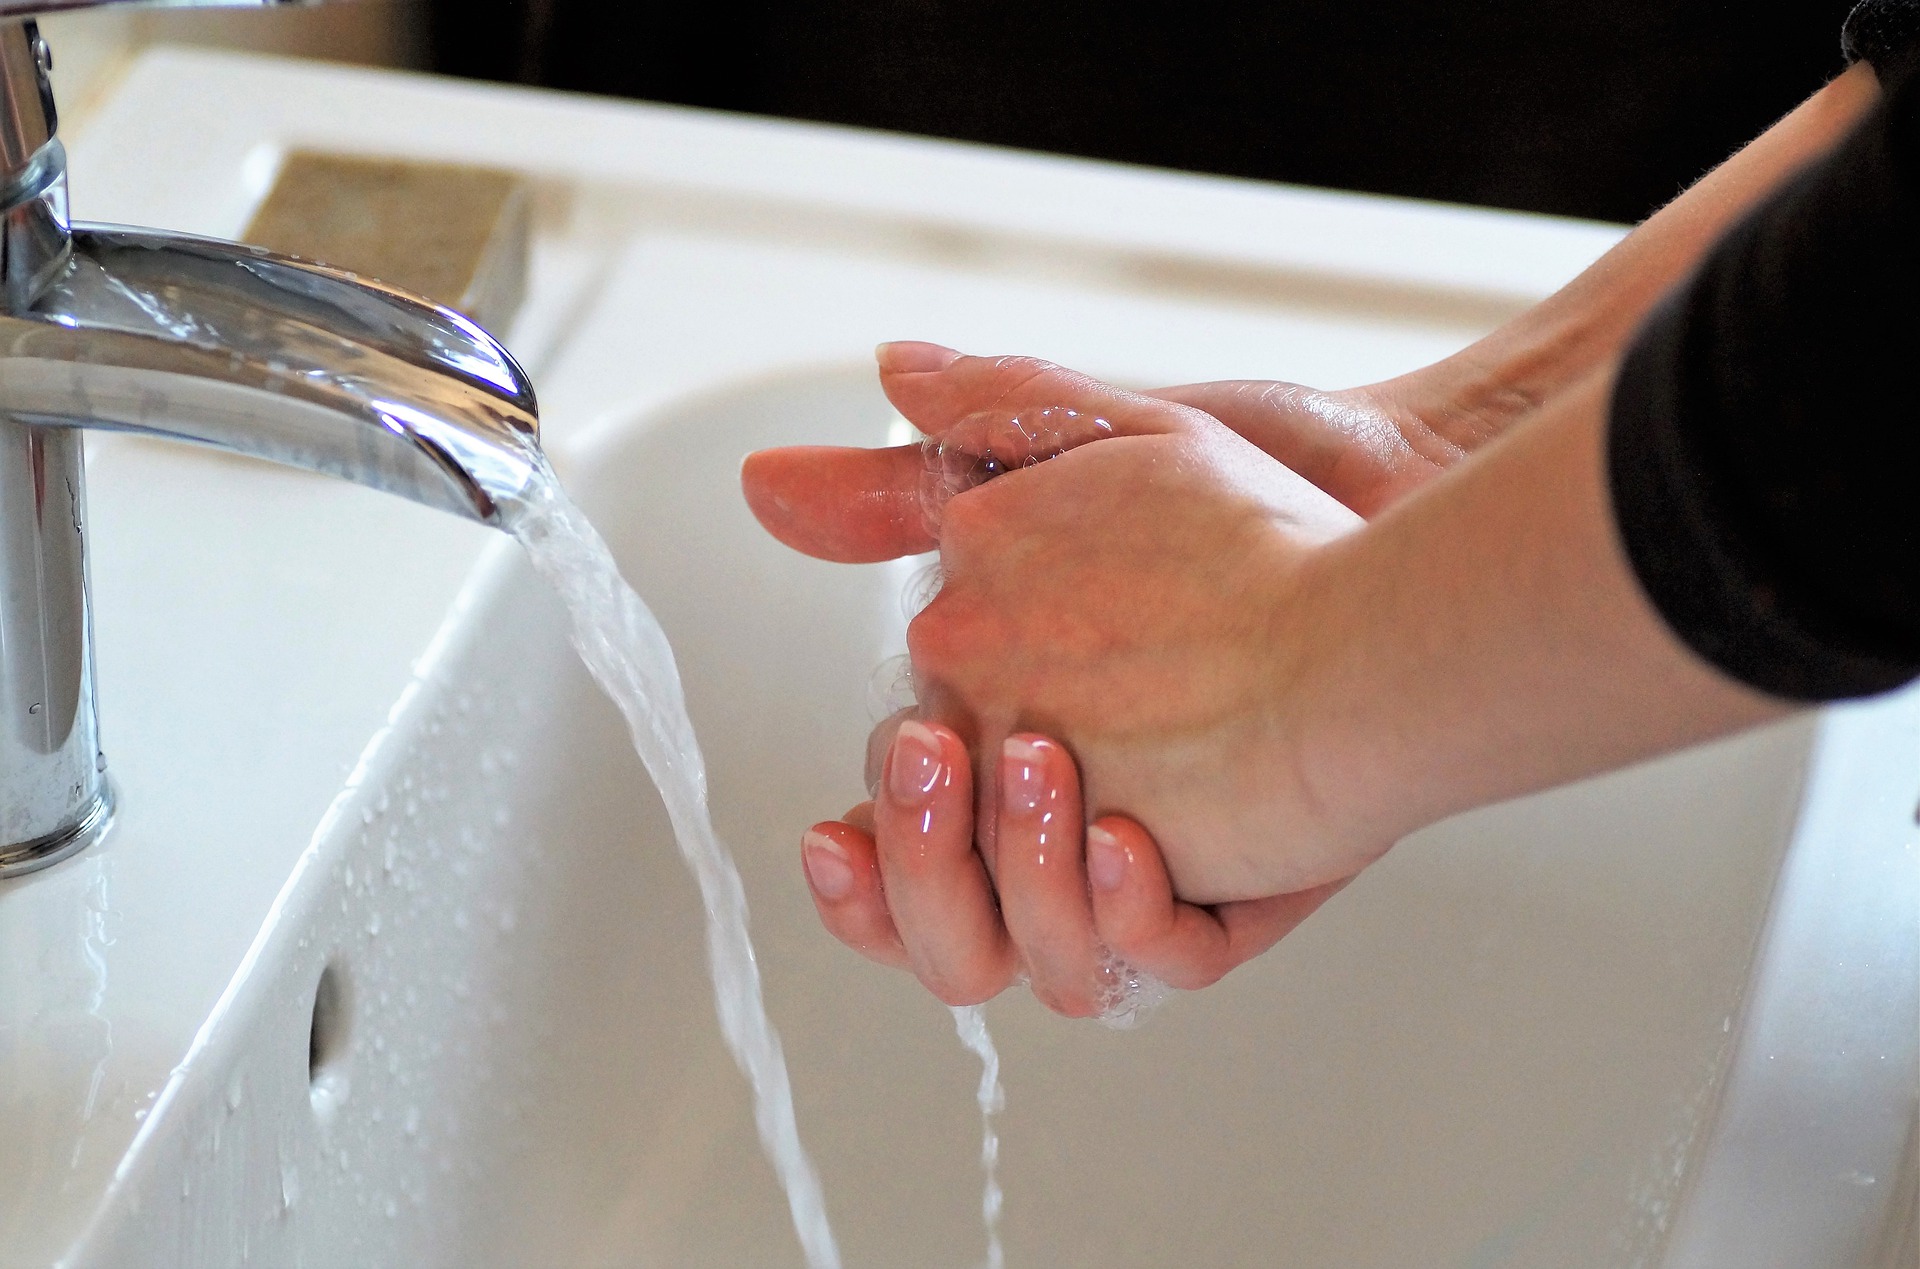 Горячей воды а также. Мытье рук. Мыть руки. Мытье рук с мылом и водой применяется для. Женщина моет руки.